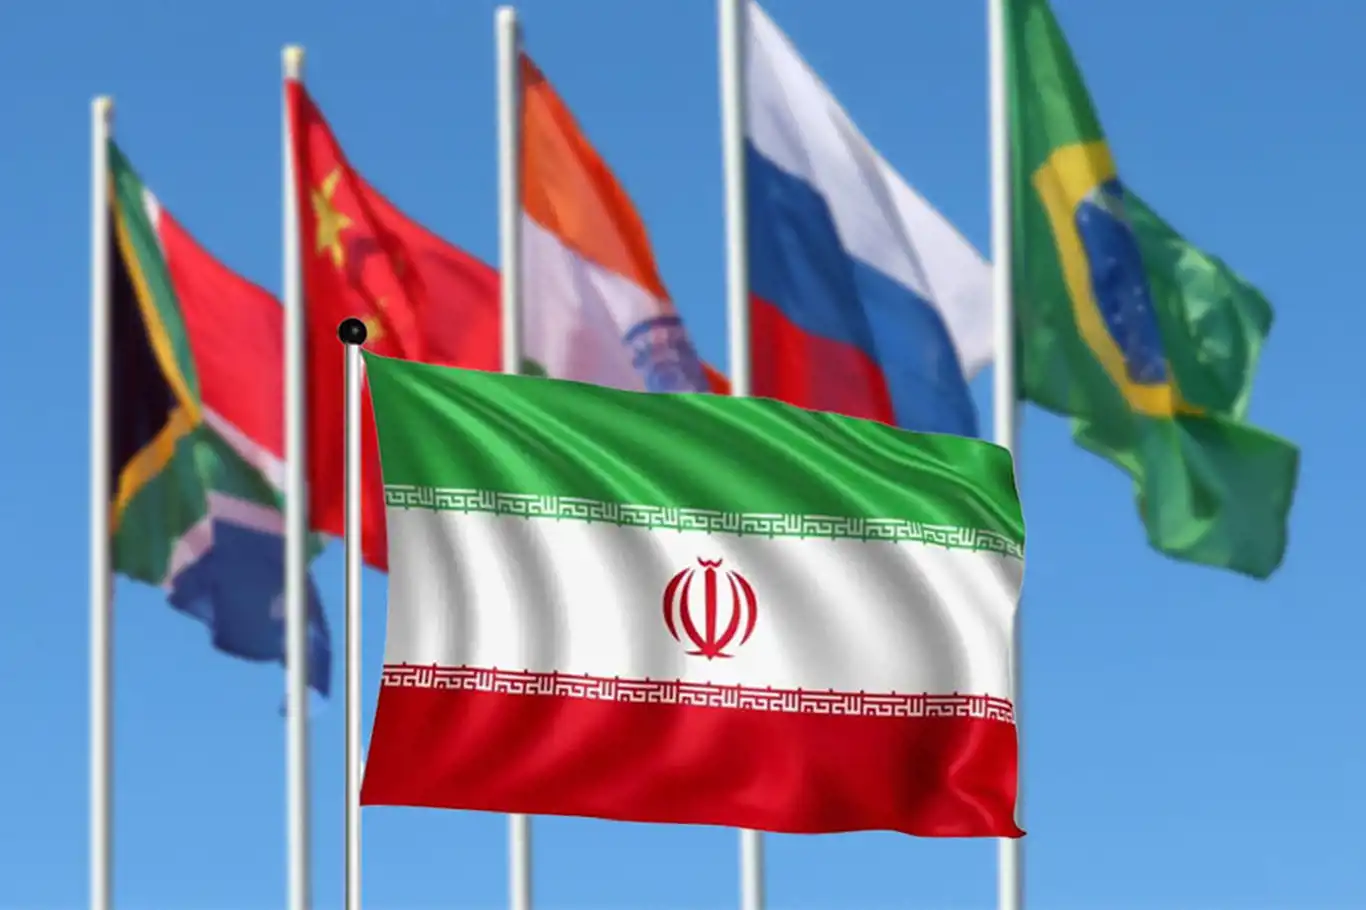 İran'a, Siyasi Başarısını Paraya Çevirme Fırsatı: BRICS